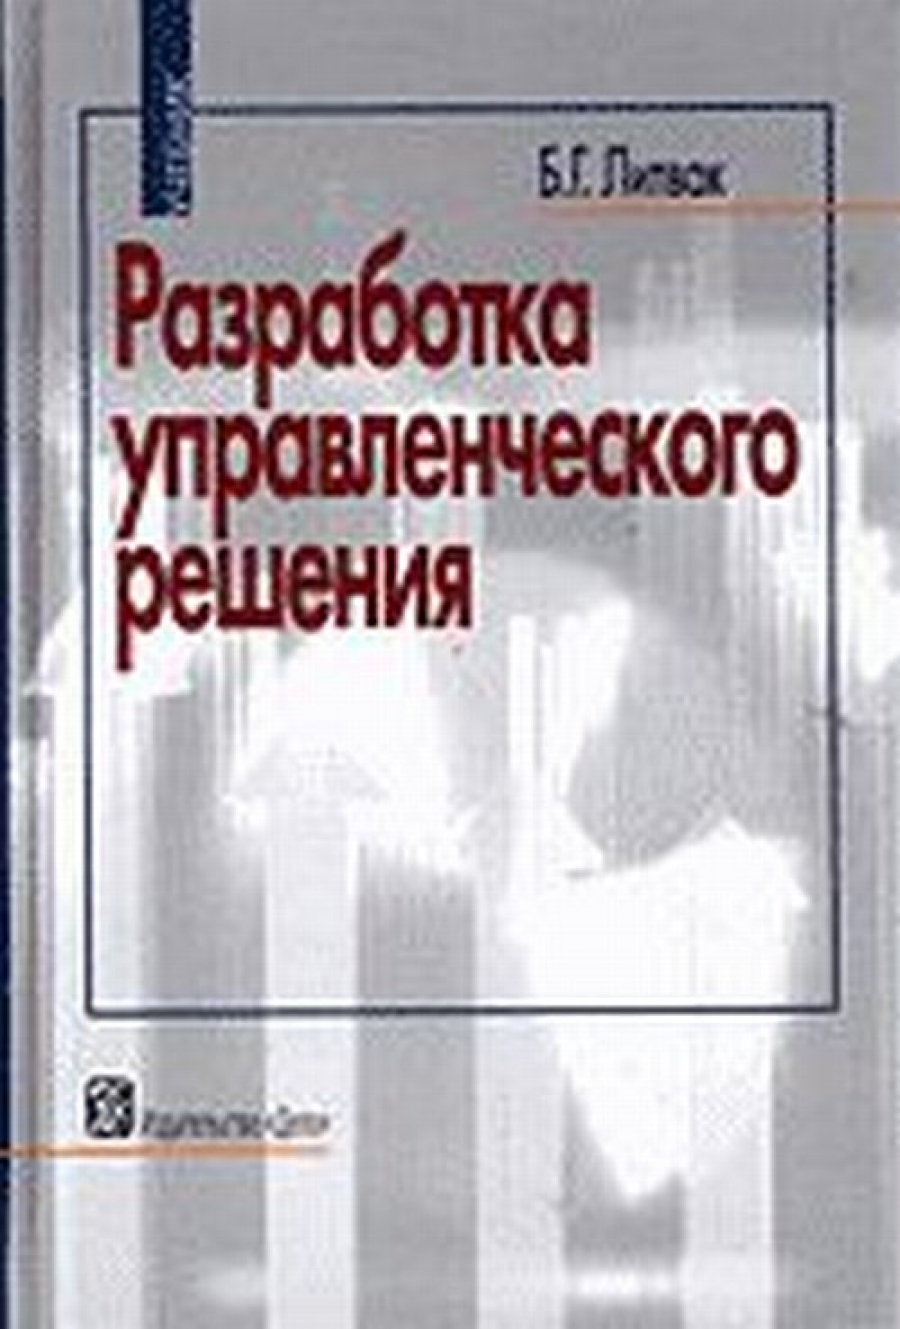 Литвак Б.Г. Разработка управленческого решения. 7-е изд., испр. и доп 